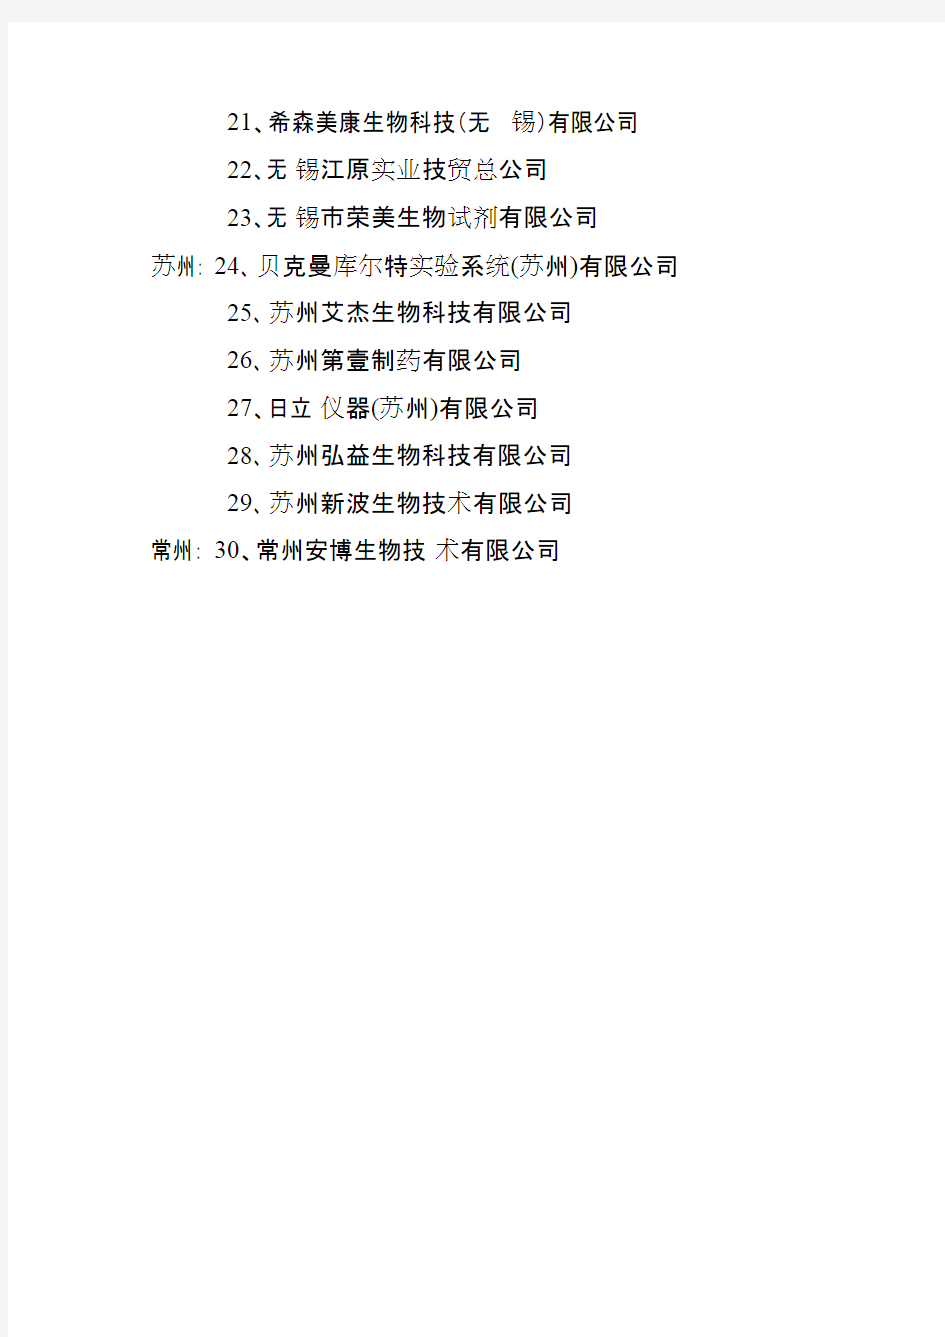 江苏省体外诊断试剂生产企业名单